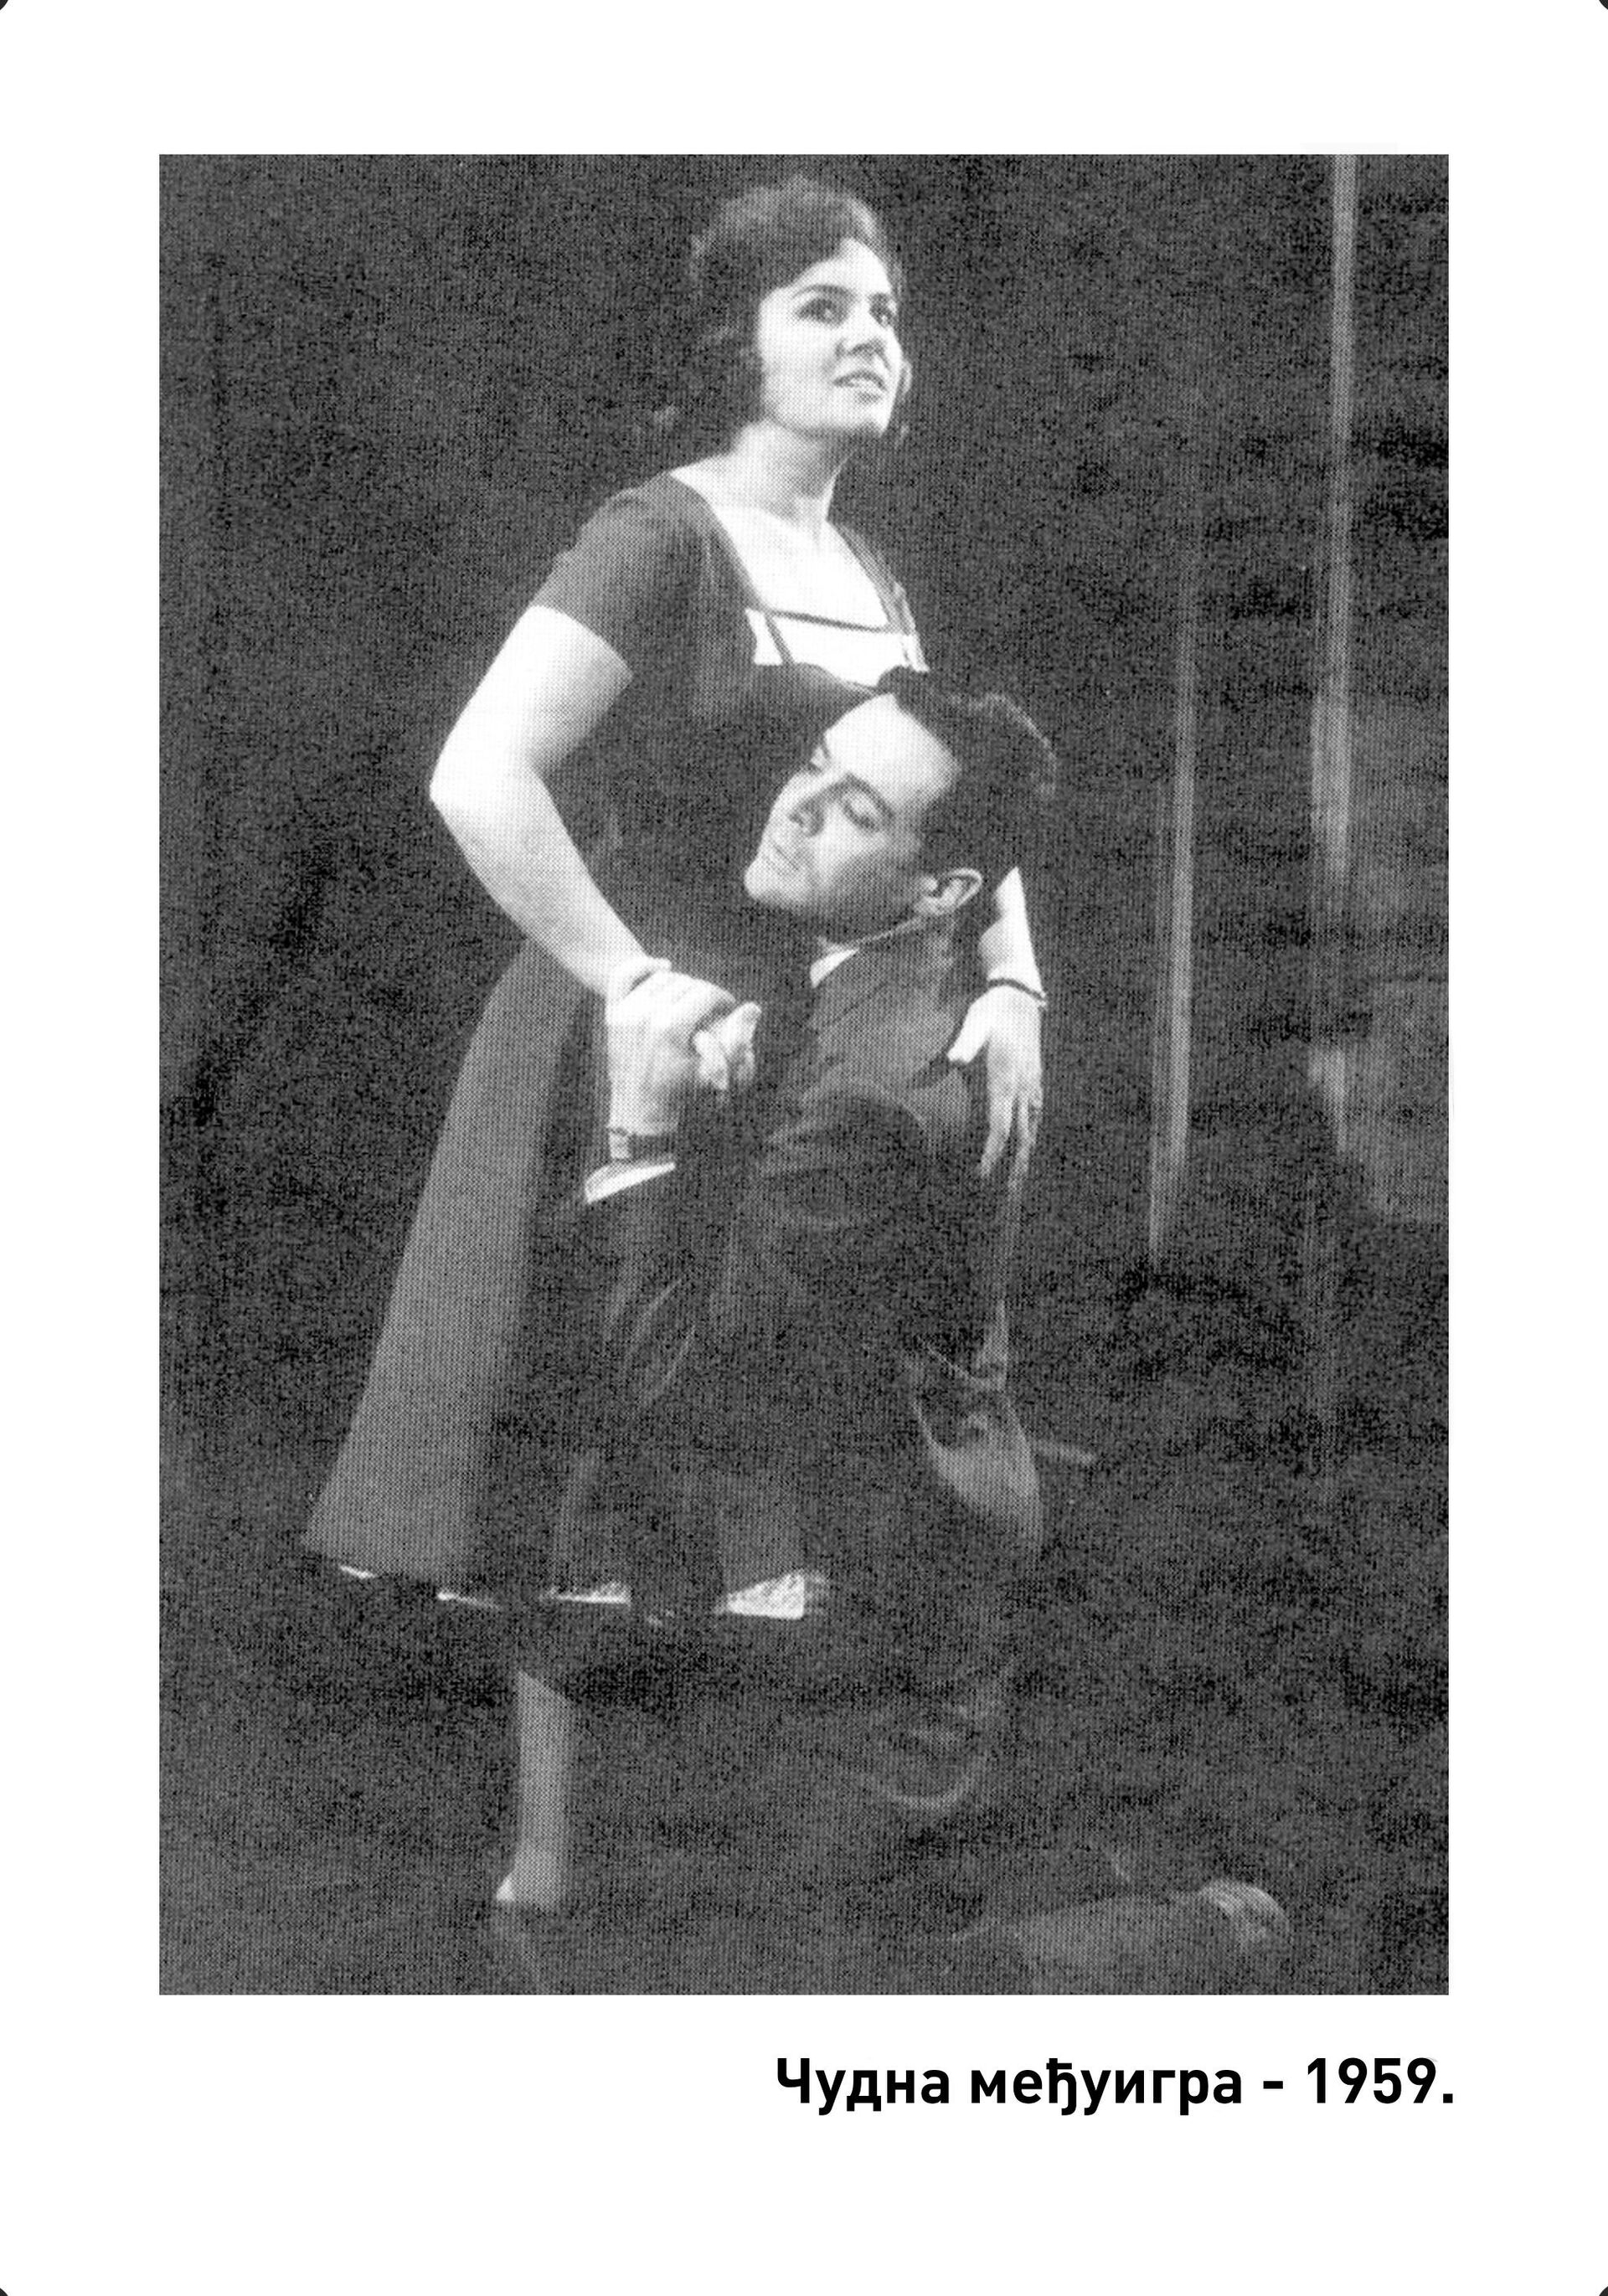 Olivera i Rade Marković kao Nina Lids i Edmund Darel u predstavi Judžina O'Nila „Čudna međuigra“ iz 1959. godine. - Sputnik Srbija, 1920, 14.10.2021